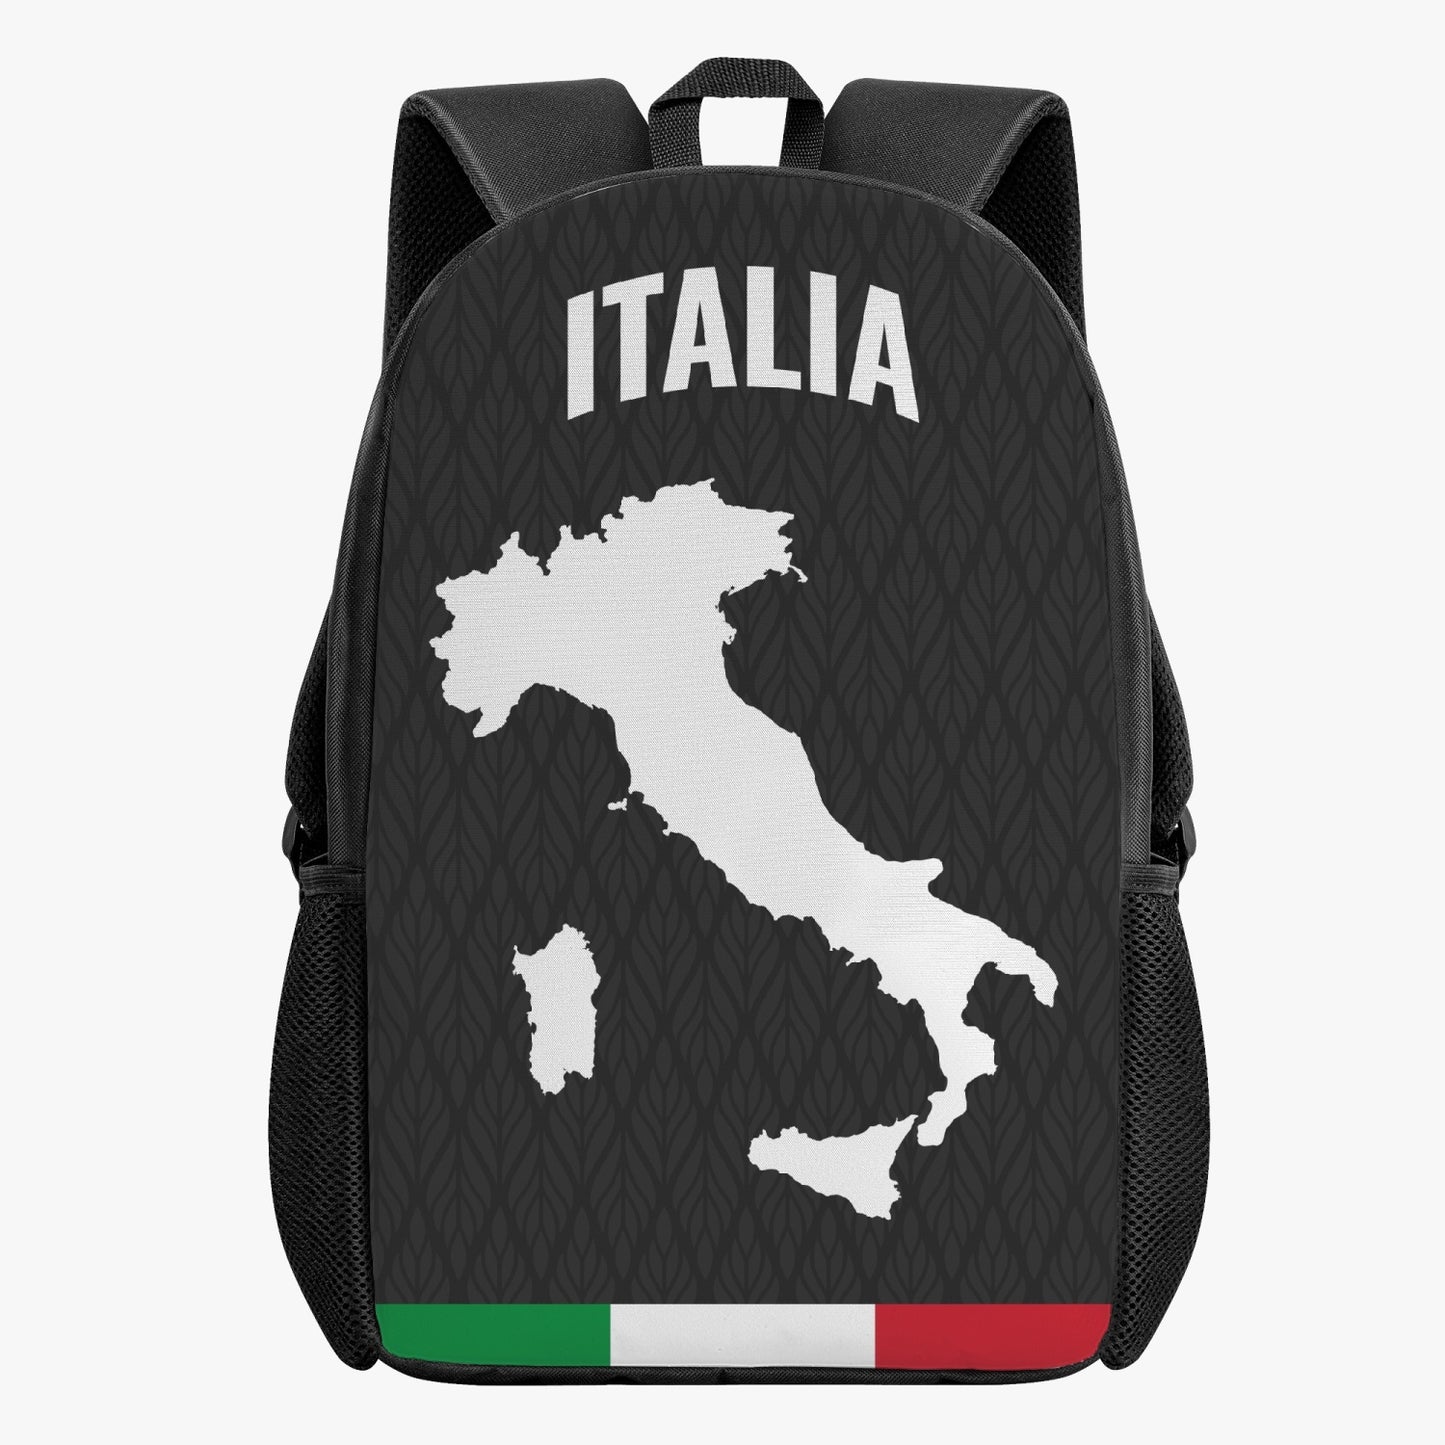 Italy Kid's School Backpack Black